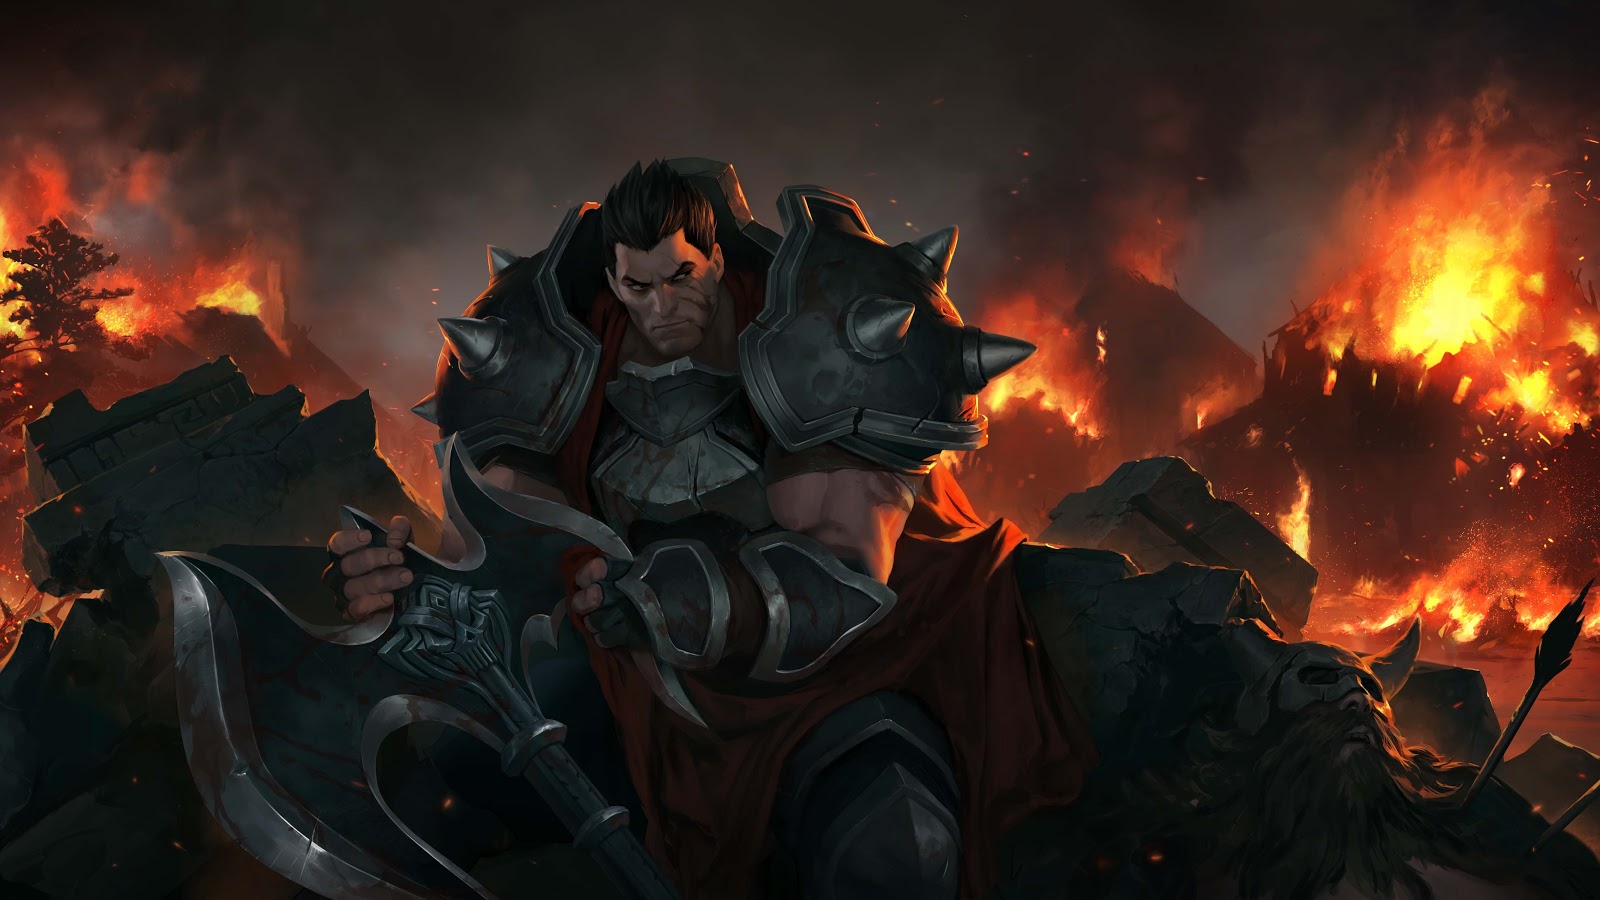 Darius sitzt mit der Klinge seiner Axt zwischen den Trümmern und blickt auf die brennende Verwüstung hinter ihm.